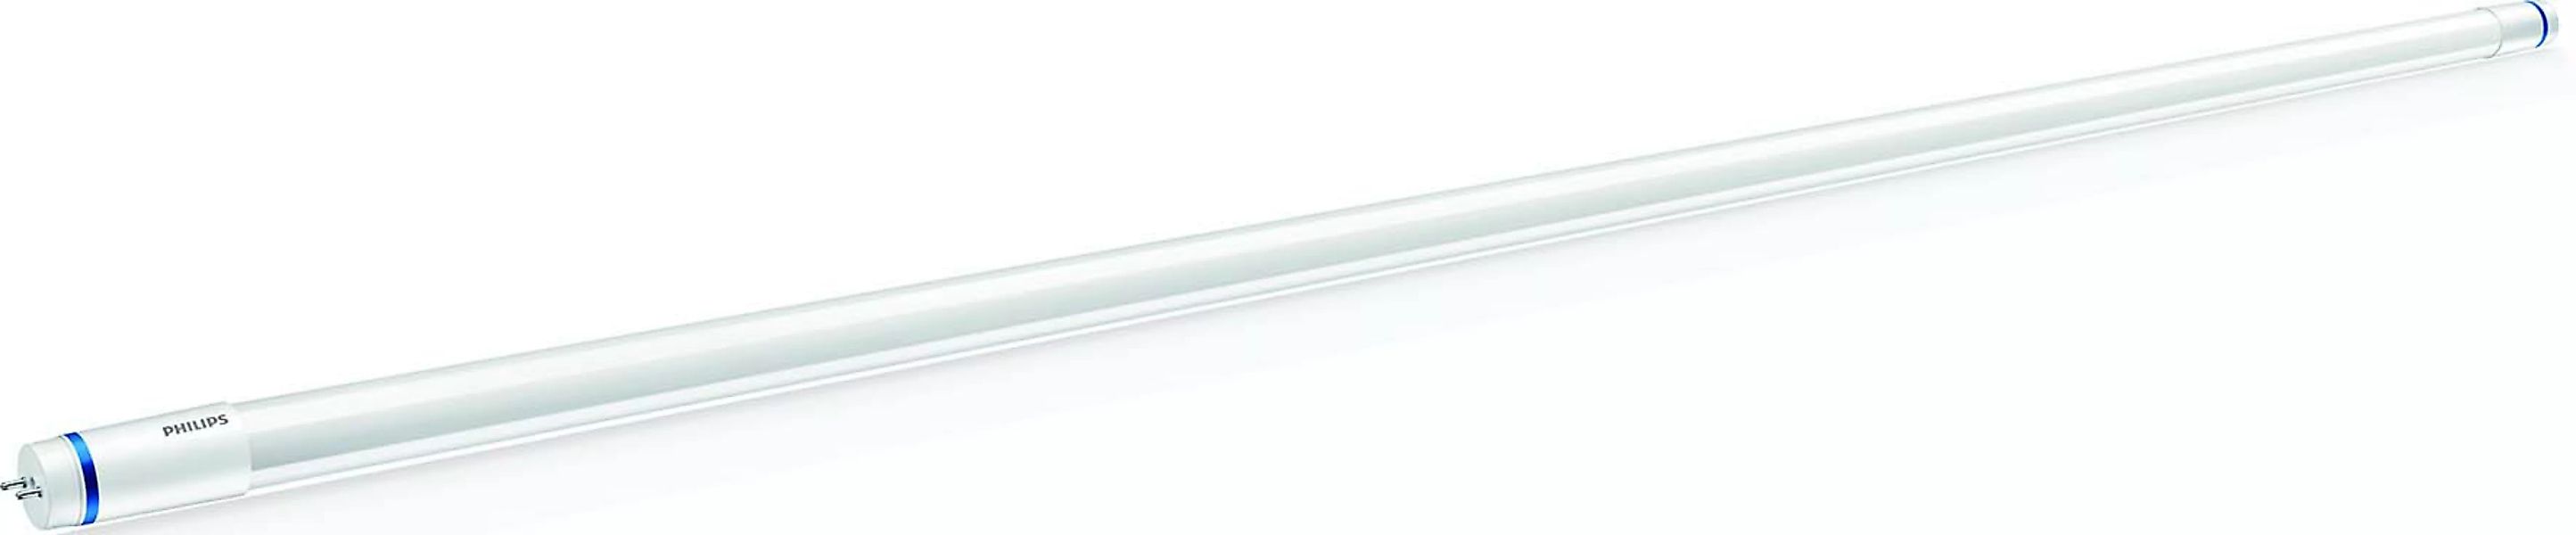 Philips Lighting LED-Tube T8 KVG/VVG G13, 830, 600mm MLEDtube #69747400 günstig online kaufen